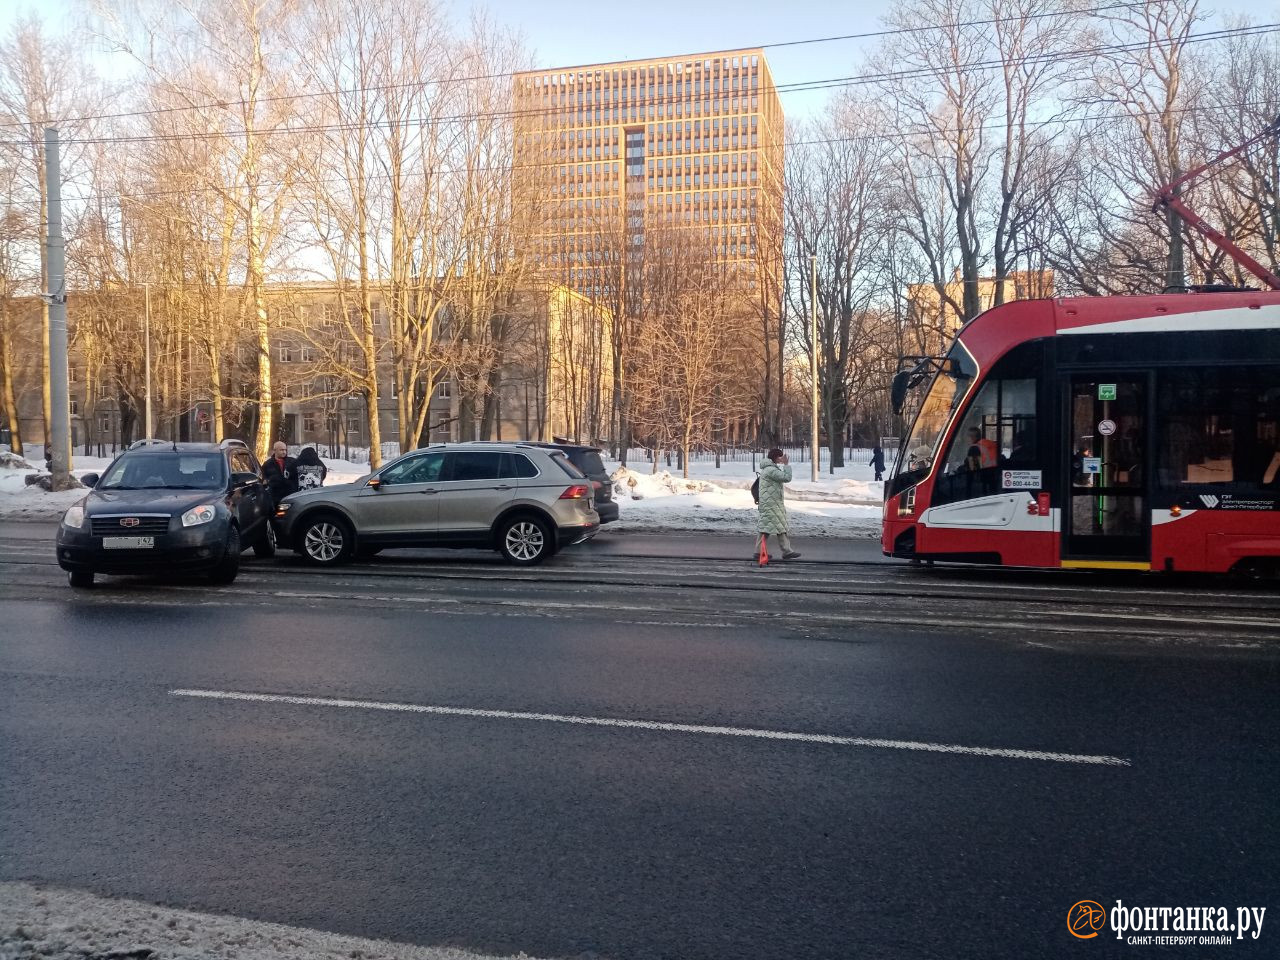 Трамваи стояли на Выборгском шоссе у Энгельса, но столкновения не было